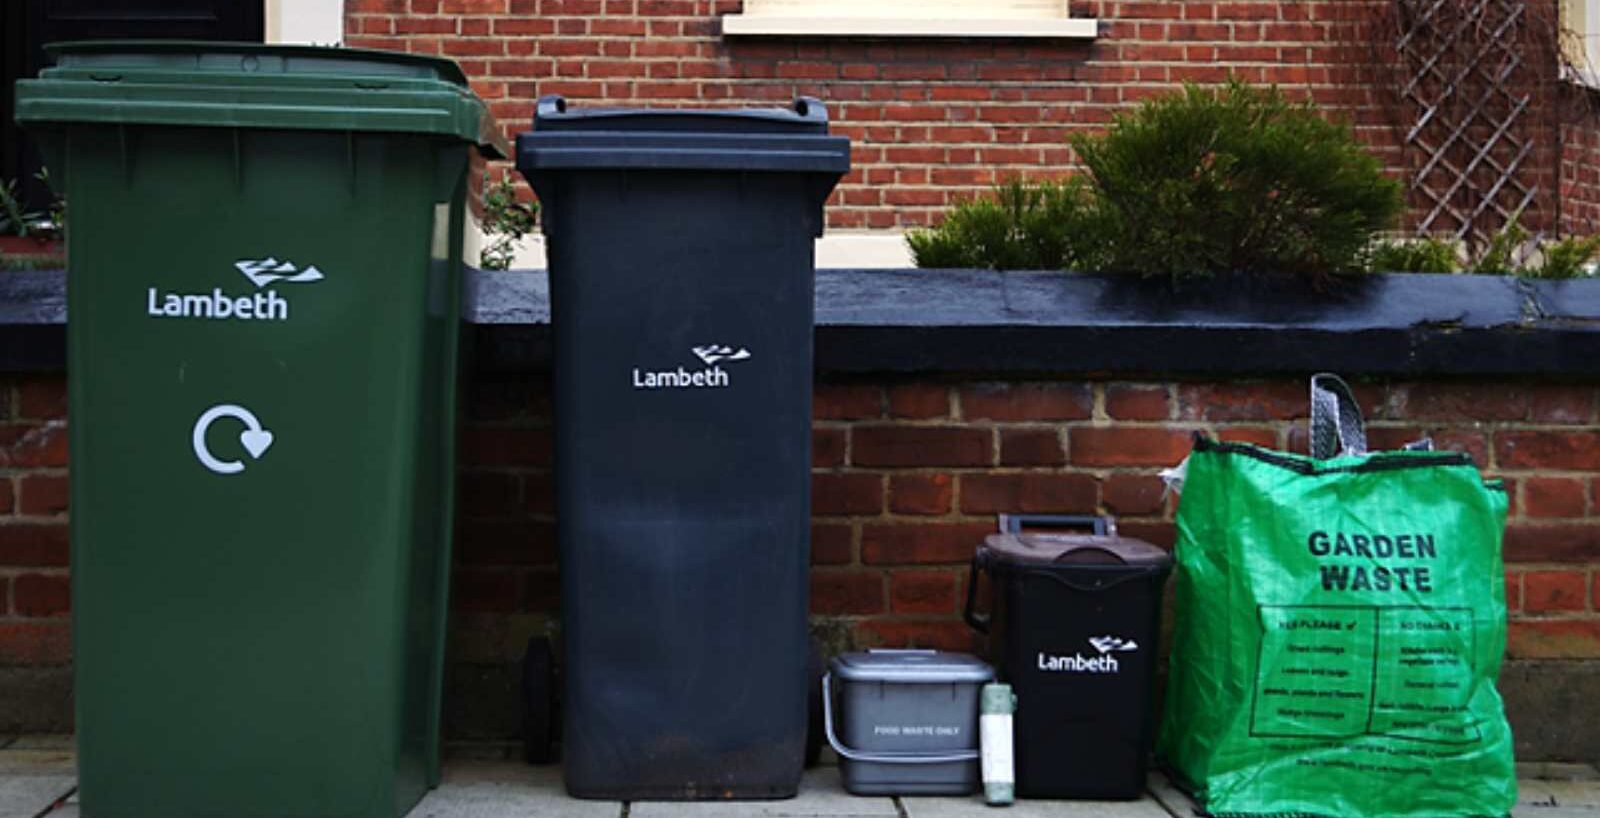 Waste bins in Lambeth